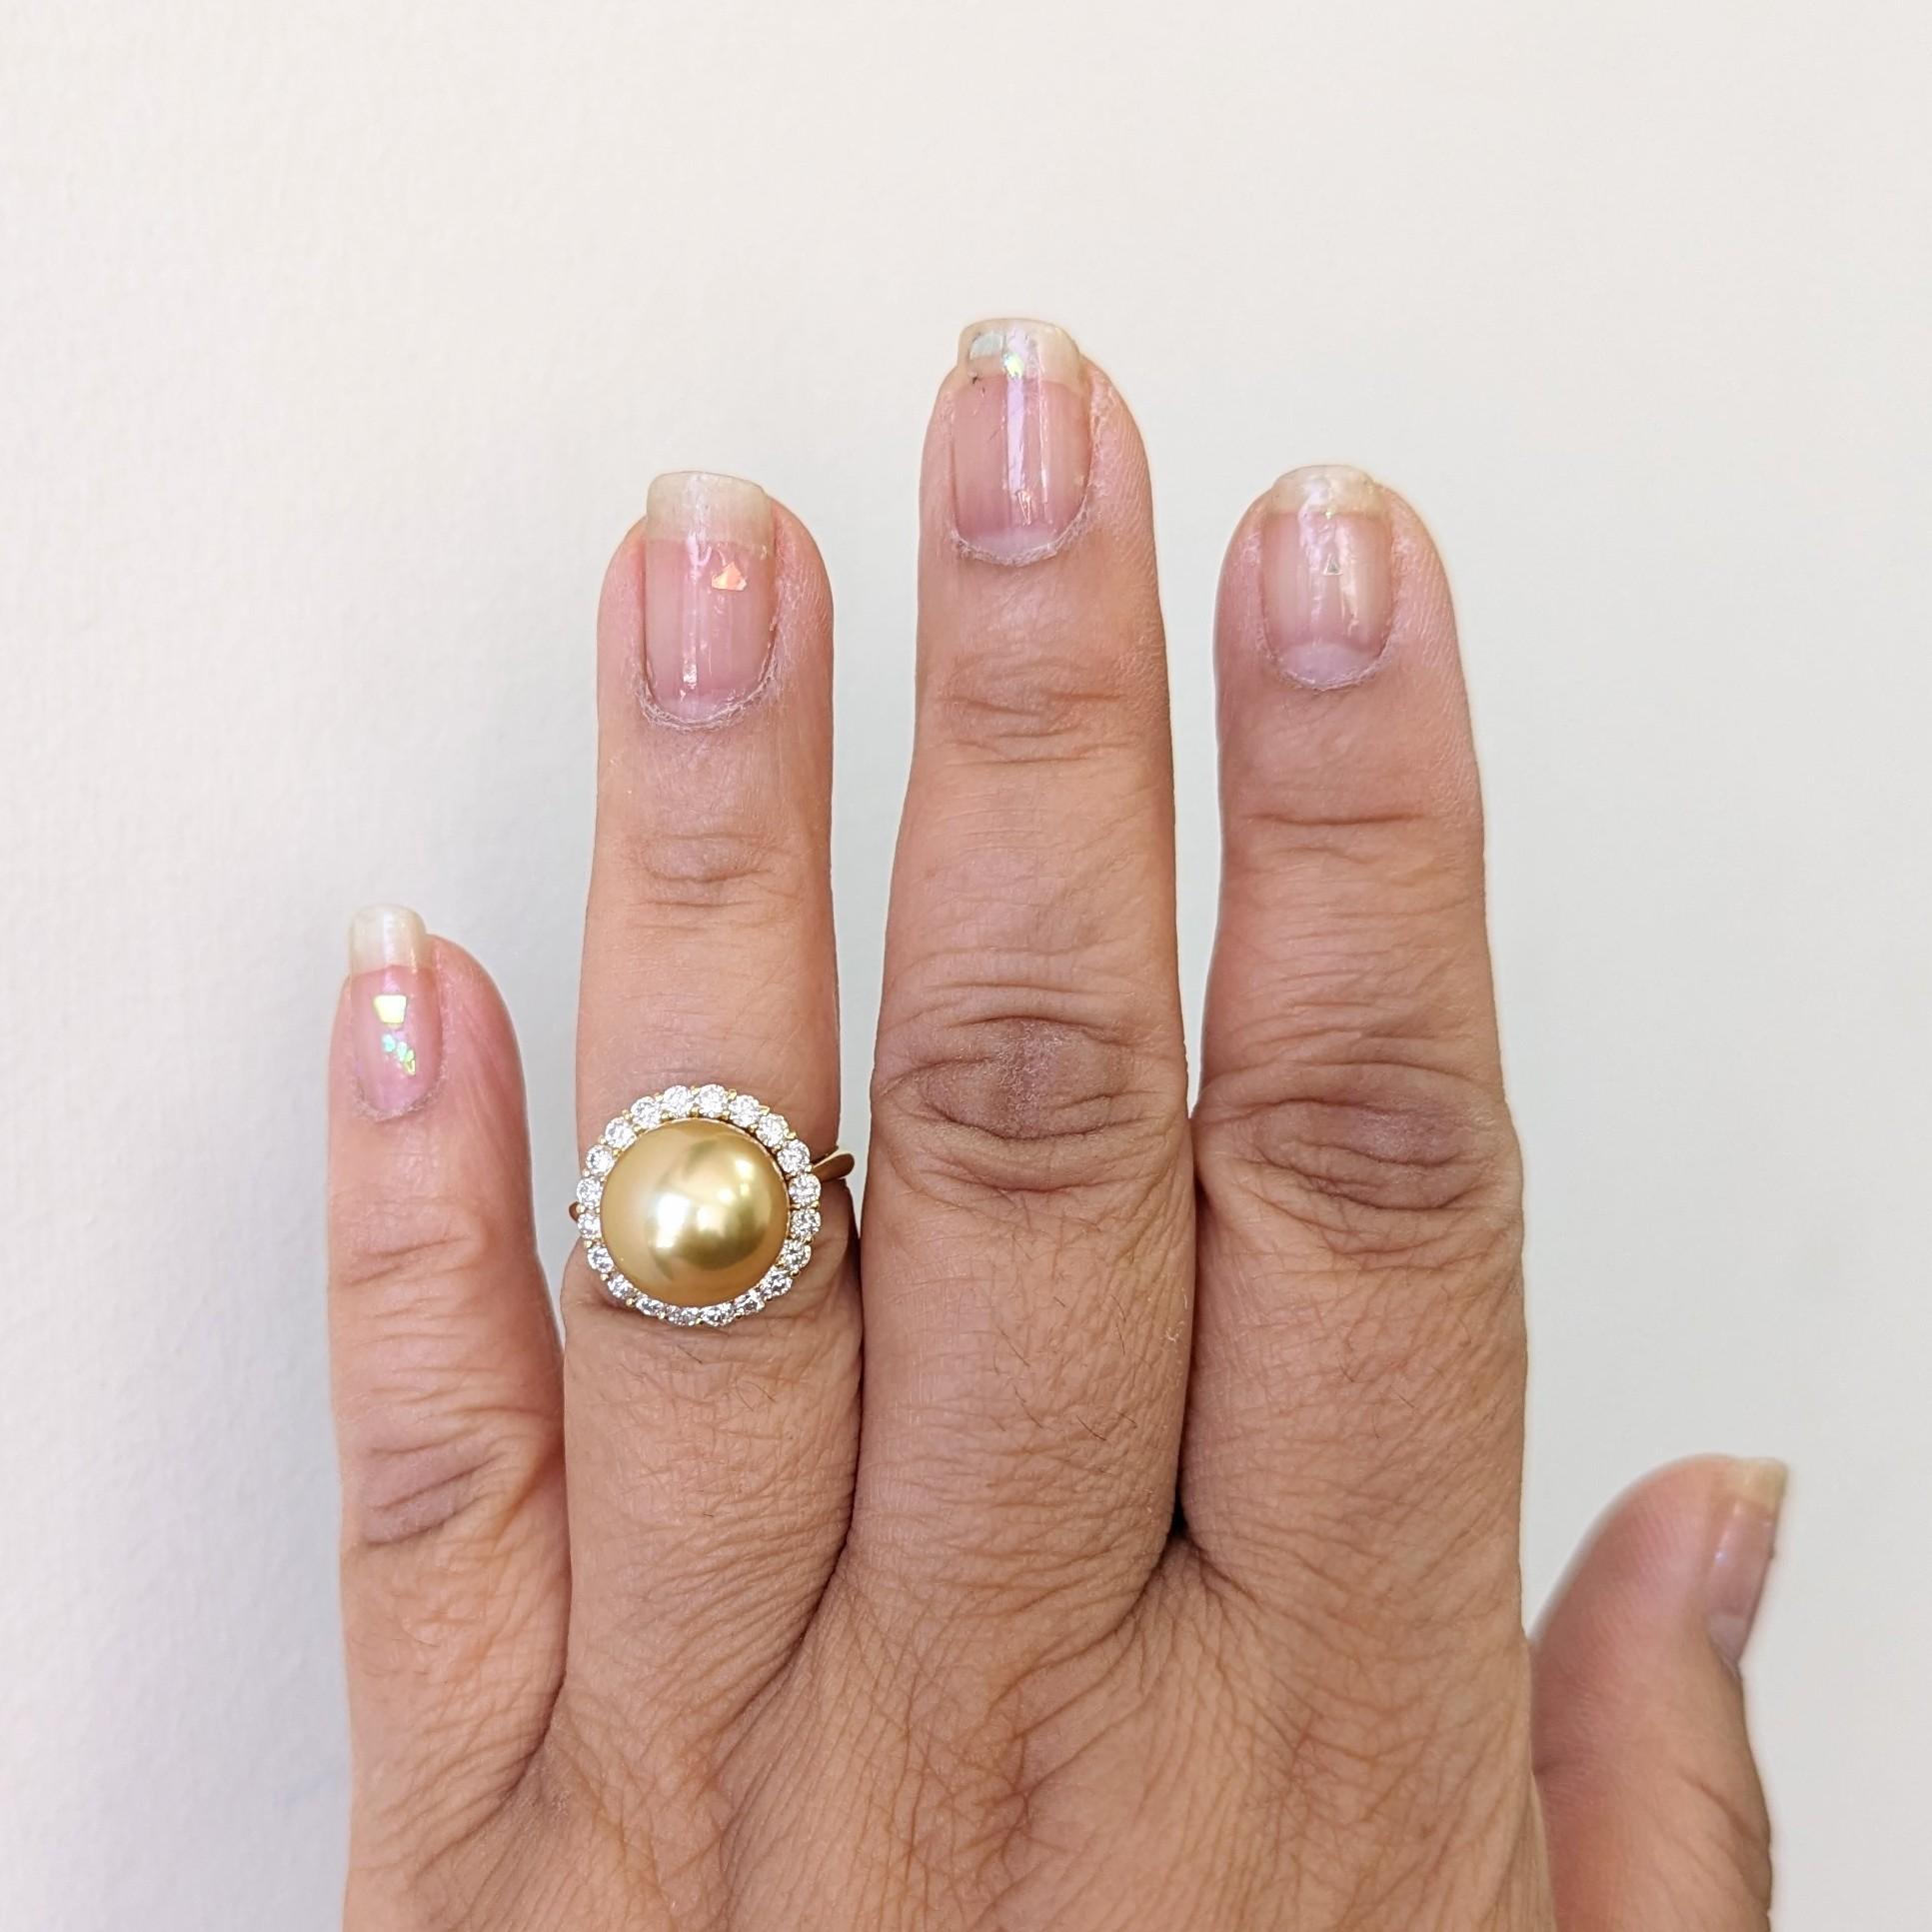 Belle grosse perle ronde dorée avec 0.70 ct. de diamants blancs ronds de bonne qualité.  Fabriqué à la main en or jaune 18k.  Bague taille 6,25.